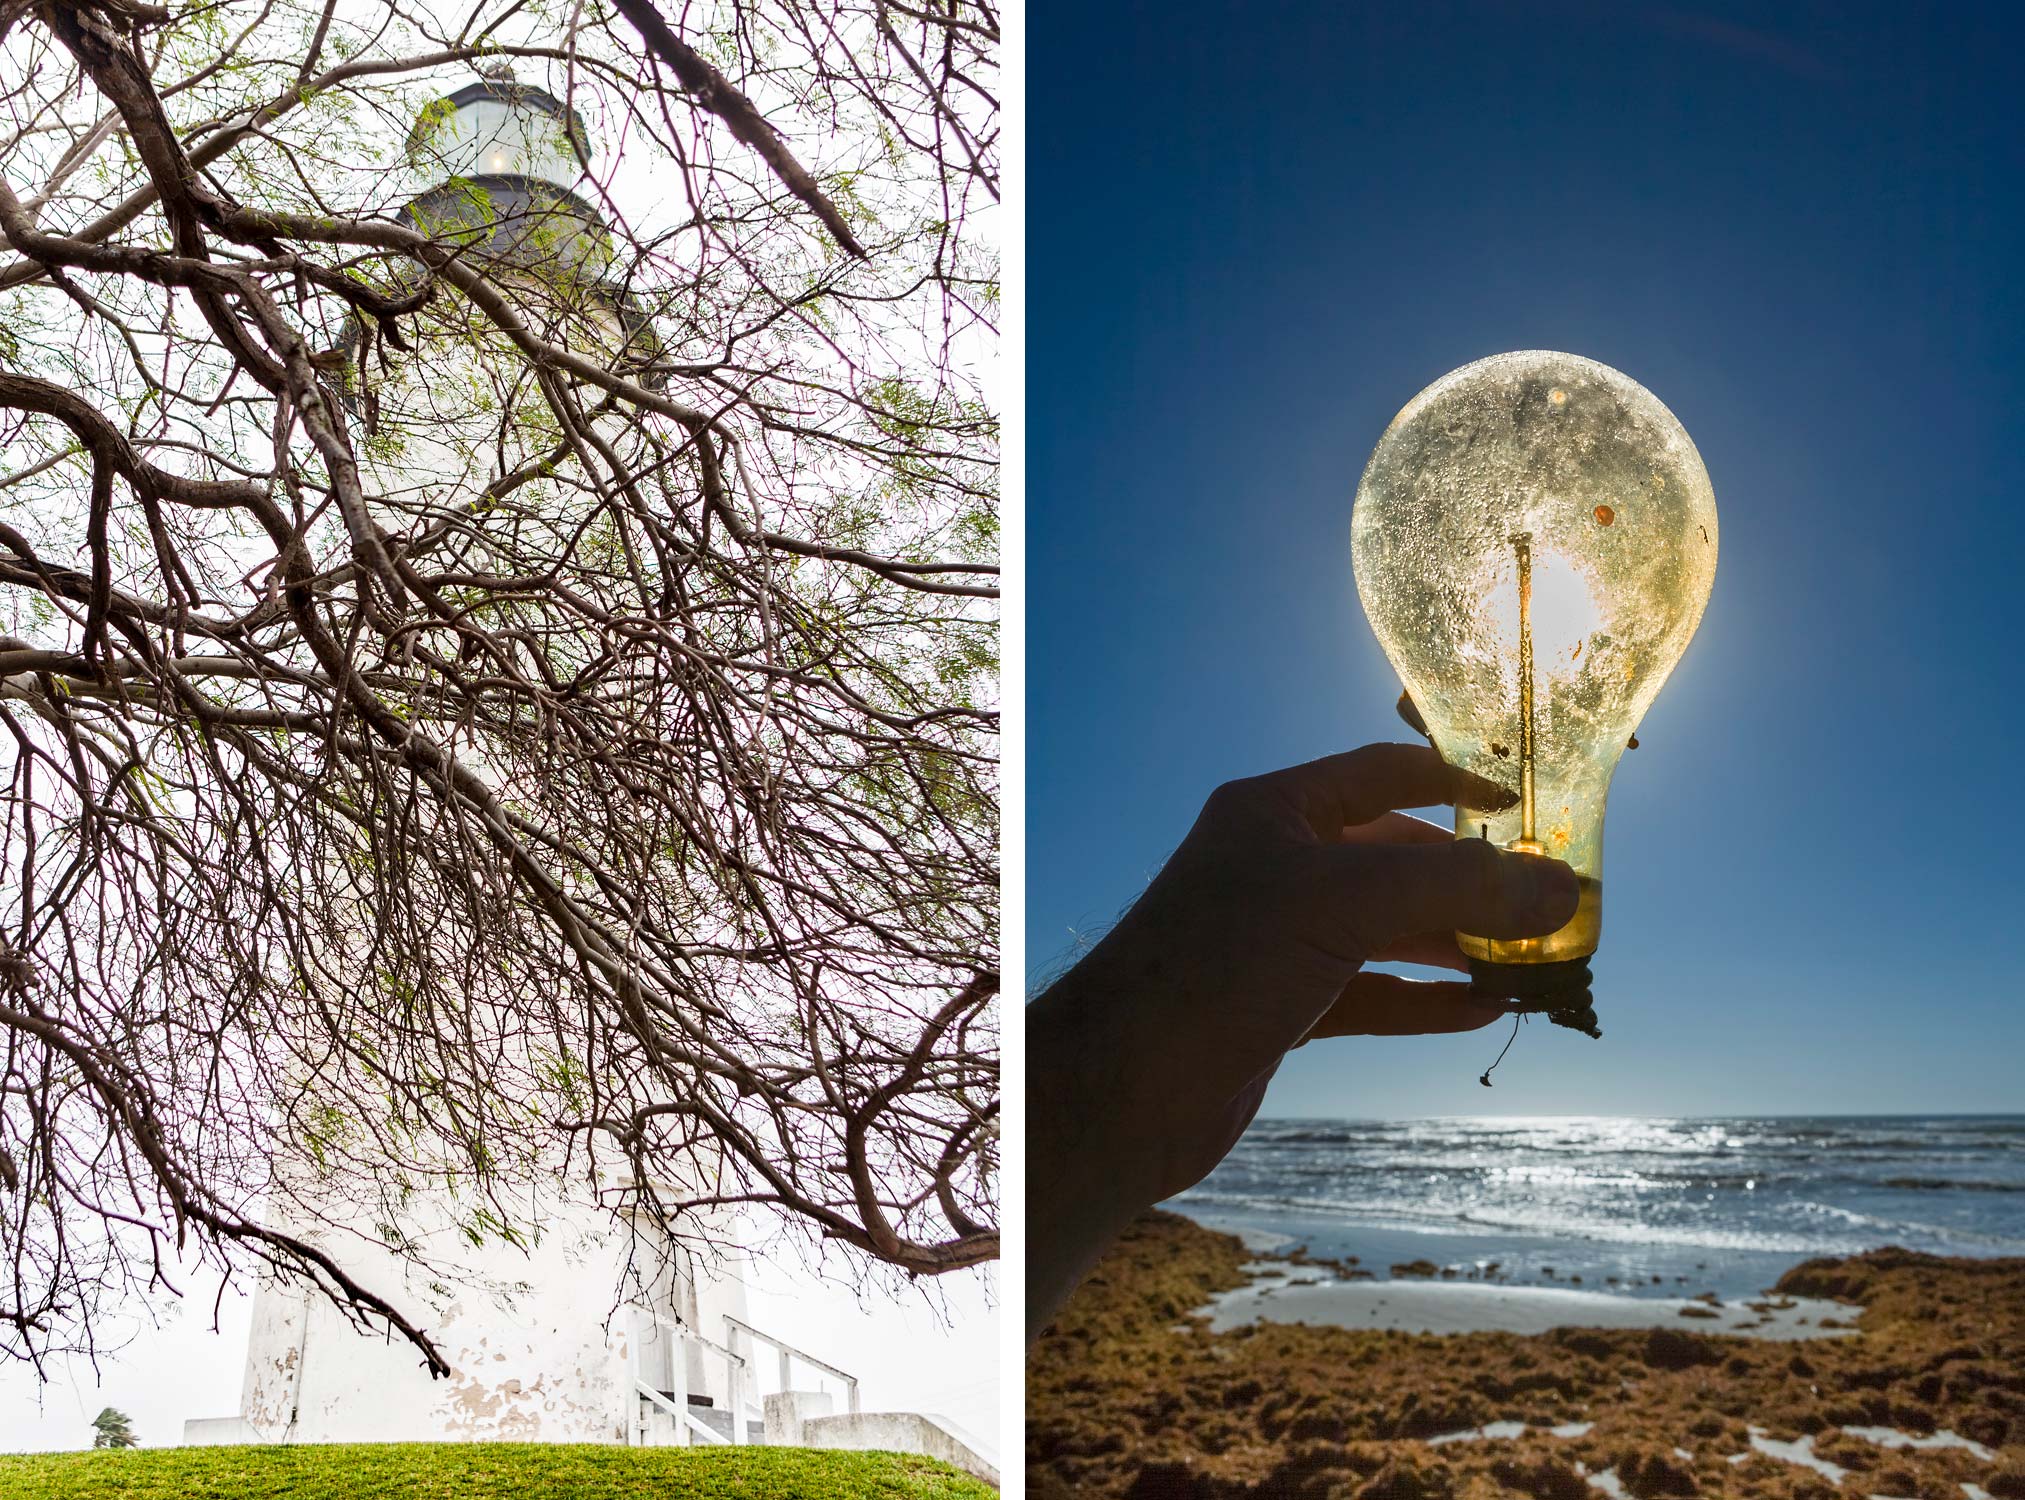 Port Isabel Lighthouse / Lightbulb hand held on beach